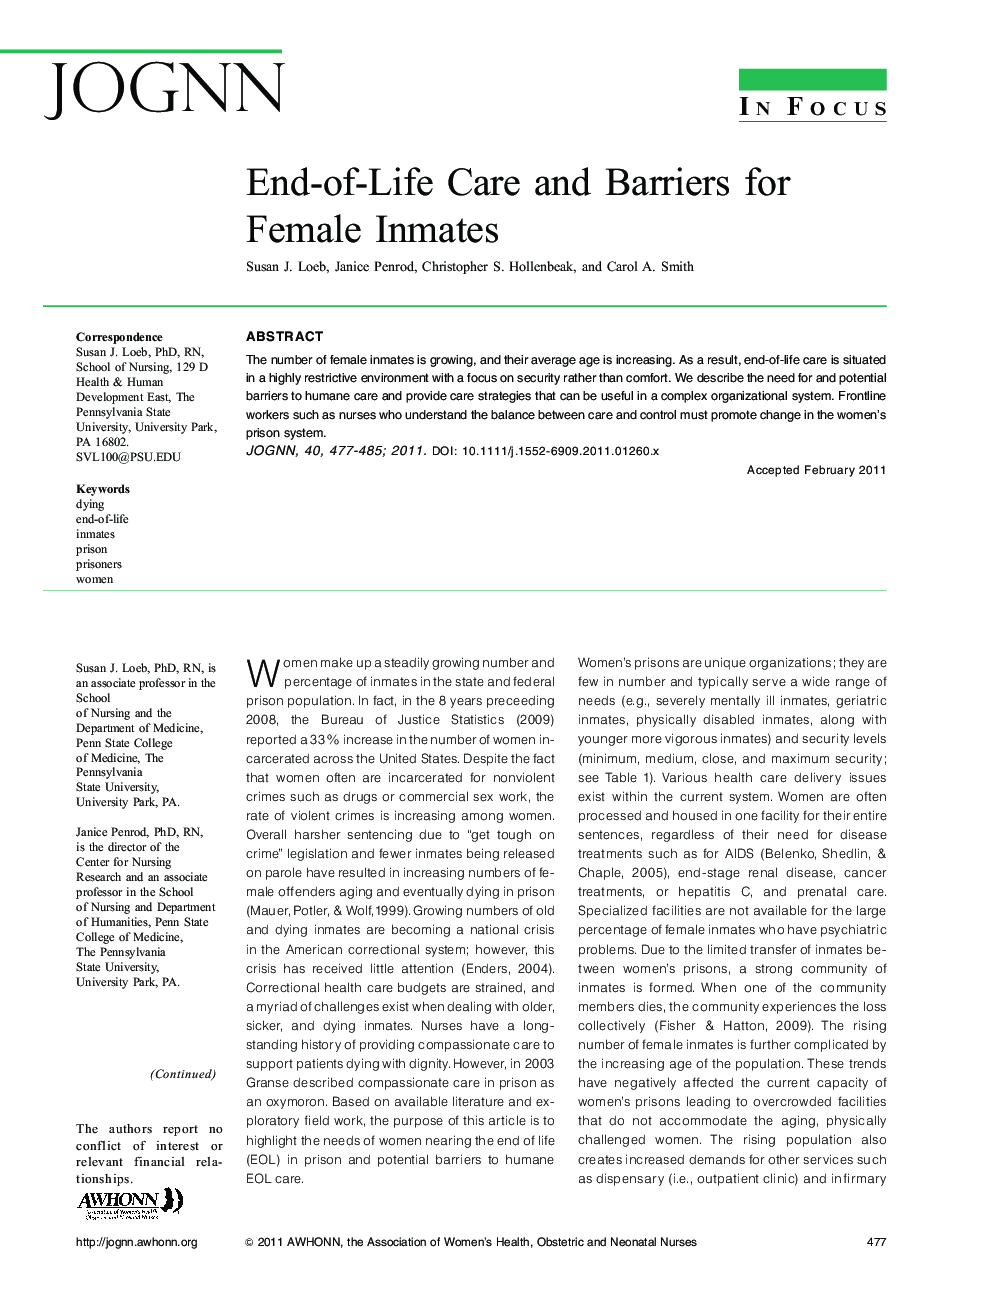 EndâofâLife Care and Barriers for Female Inmates